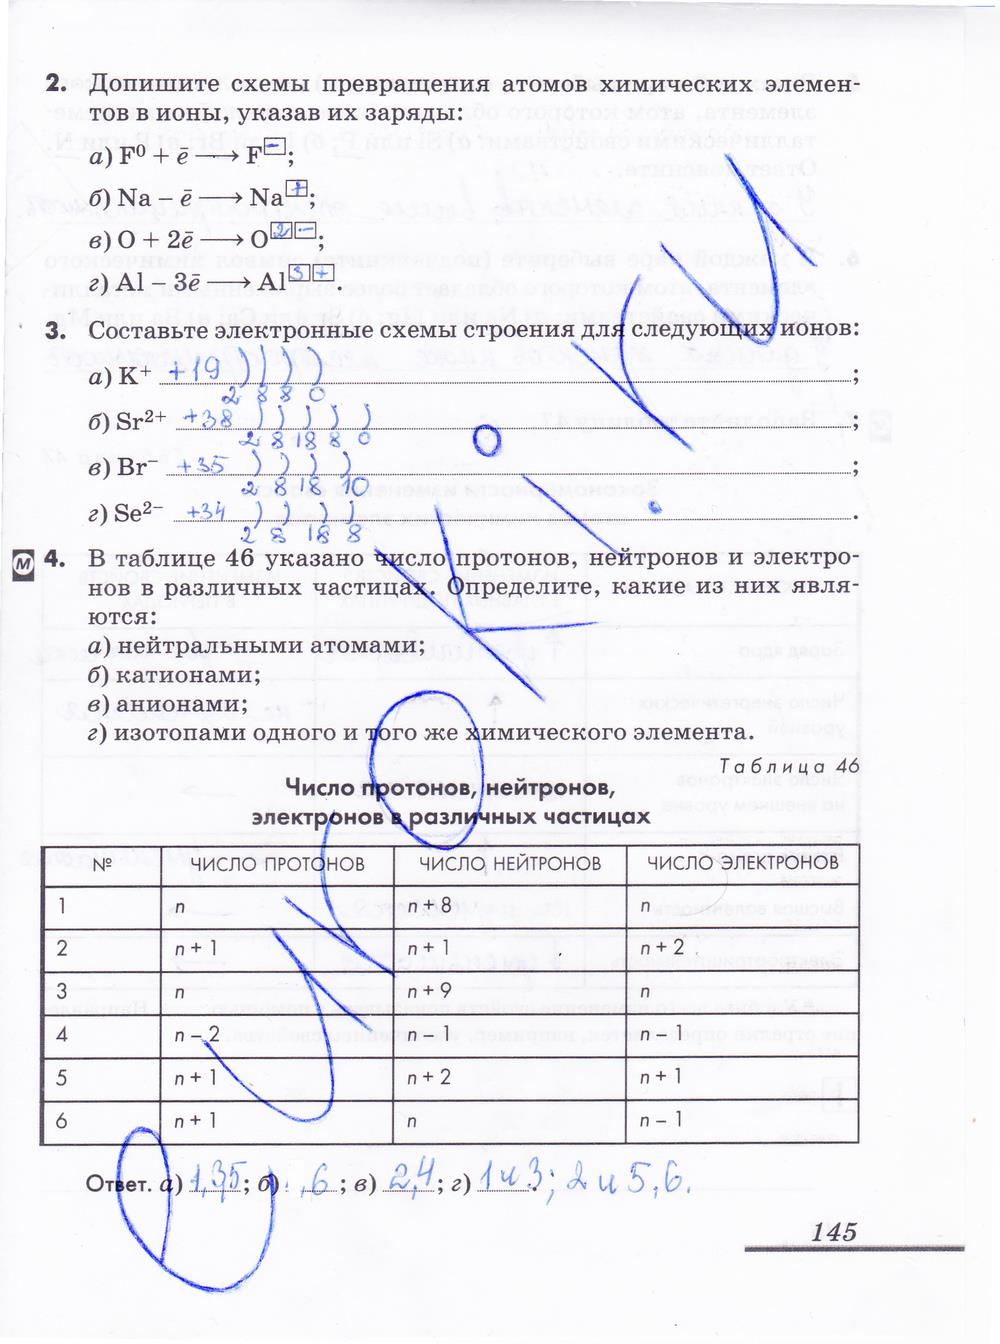 гдз 8 класс рабочая тетрадь страница 145 химия Еремин, Дроздов